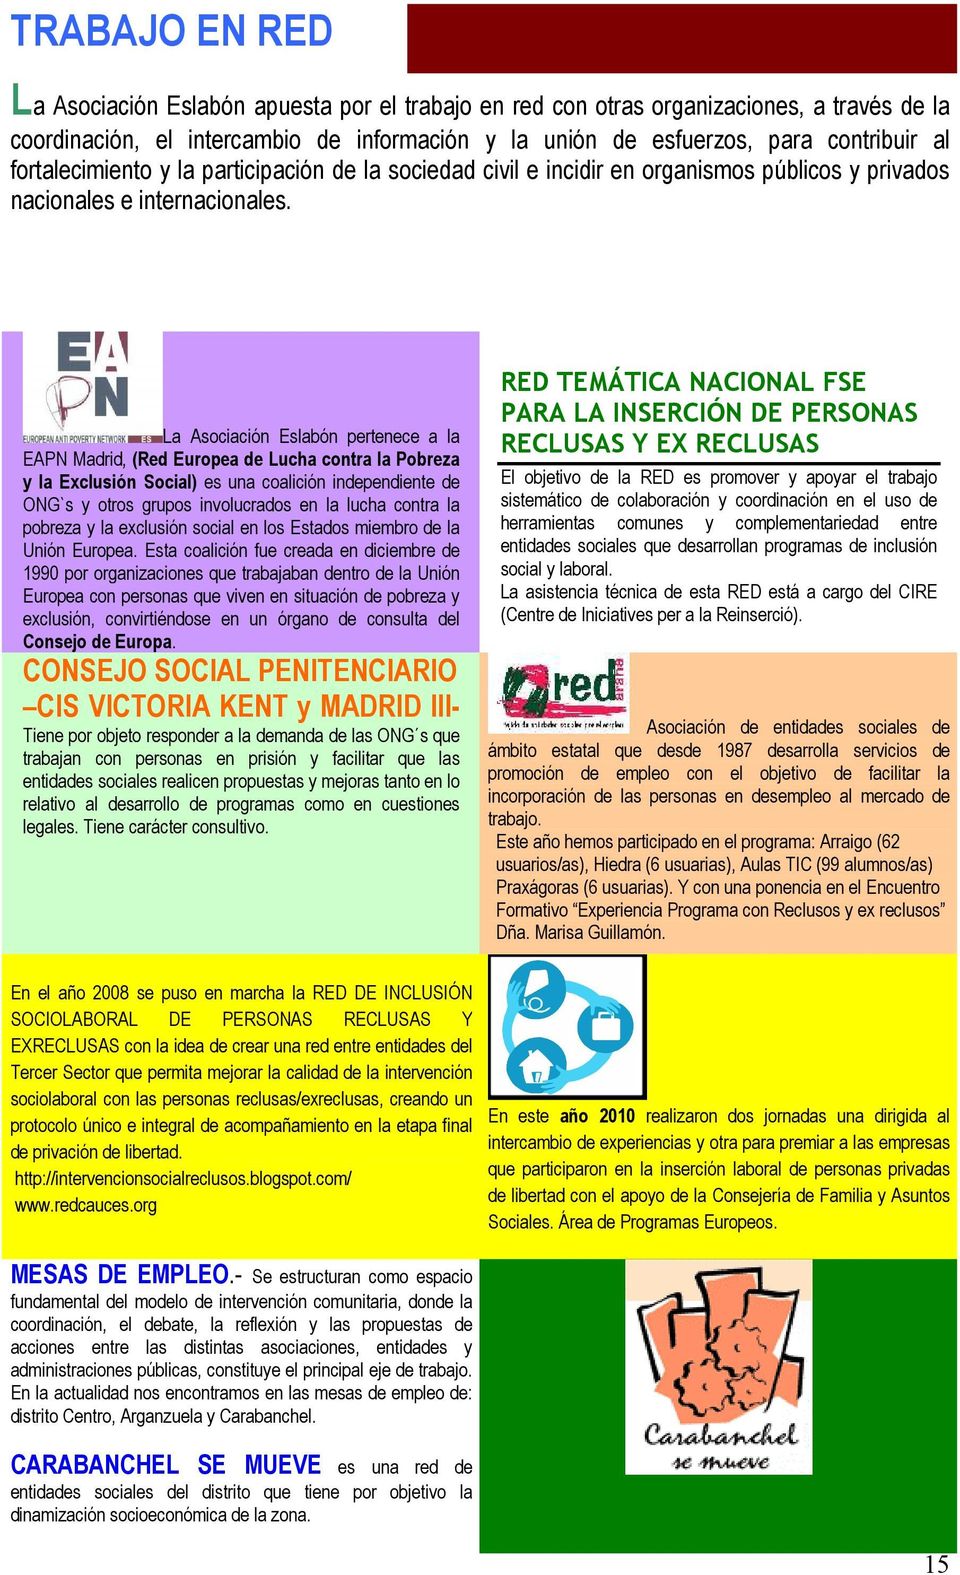 La Asociación Eslabón pertenece a la EAPN Madrid, (Red Europea de Lucha contra la Pobreza y la Exclusión Social) es una coalición independiente de ONG`s y otros grupos involucrados en la lucha contra